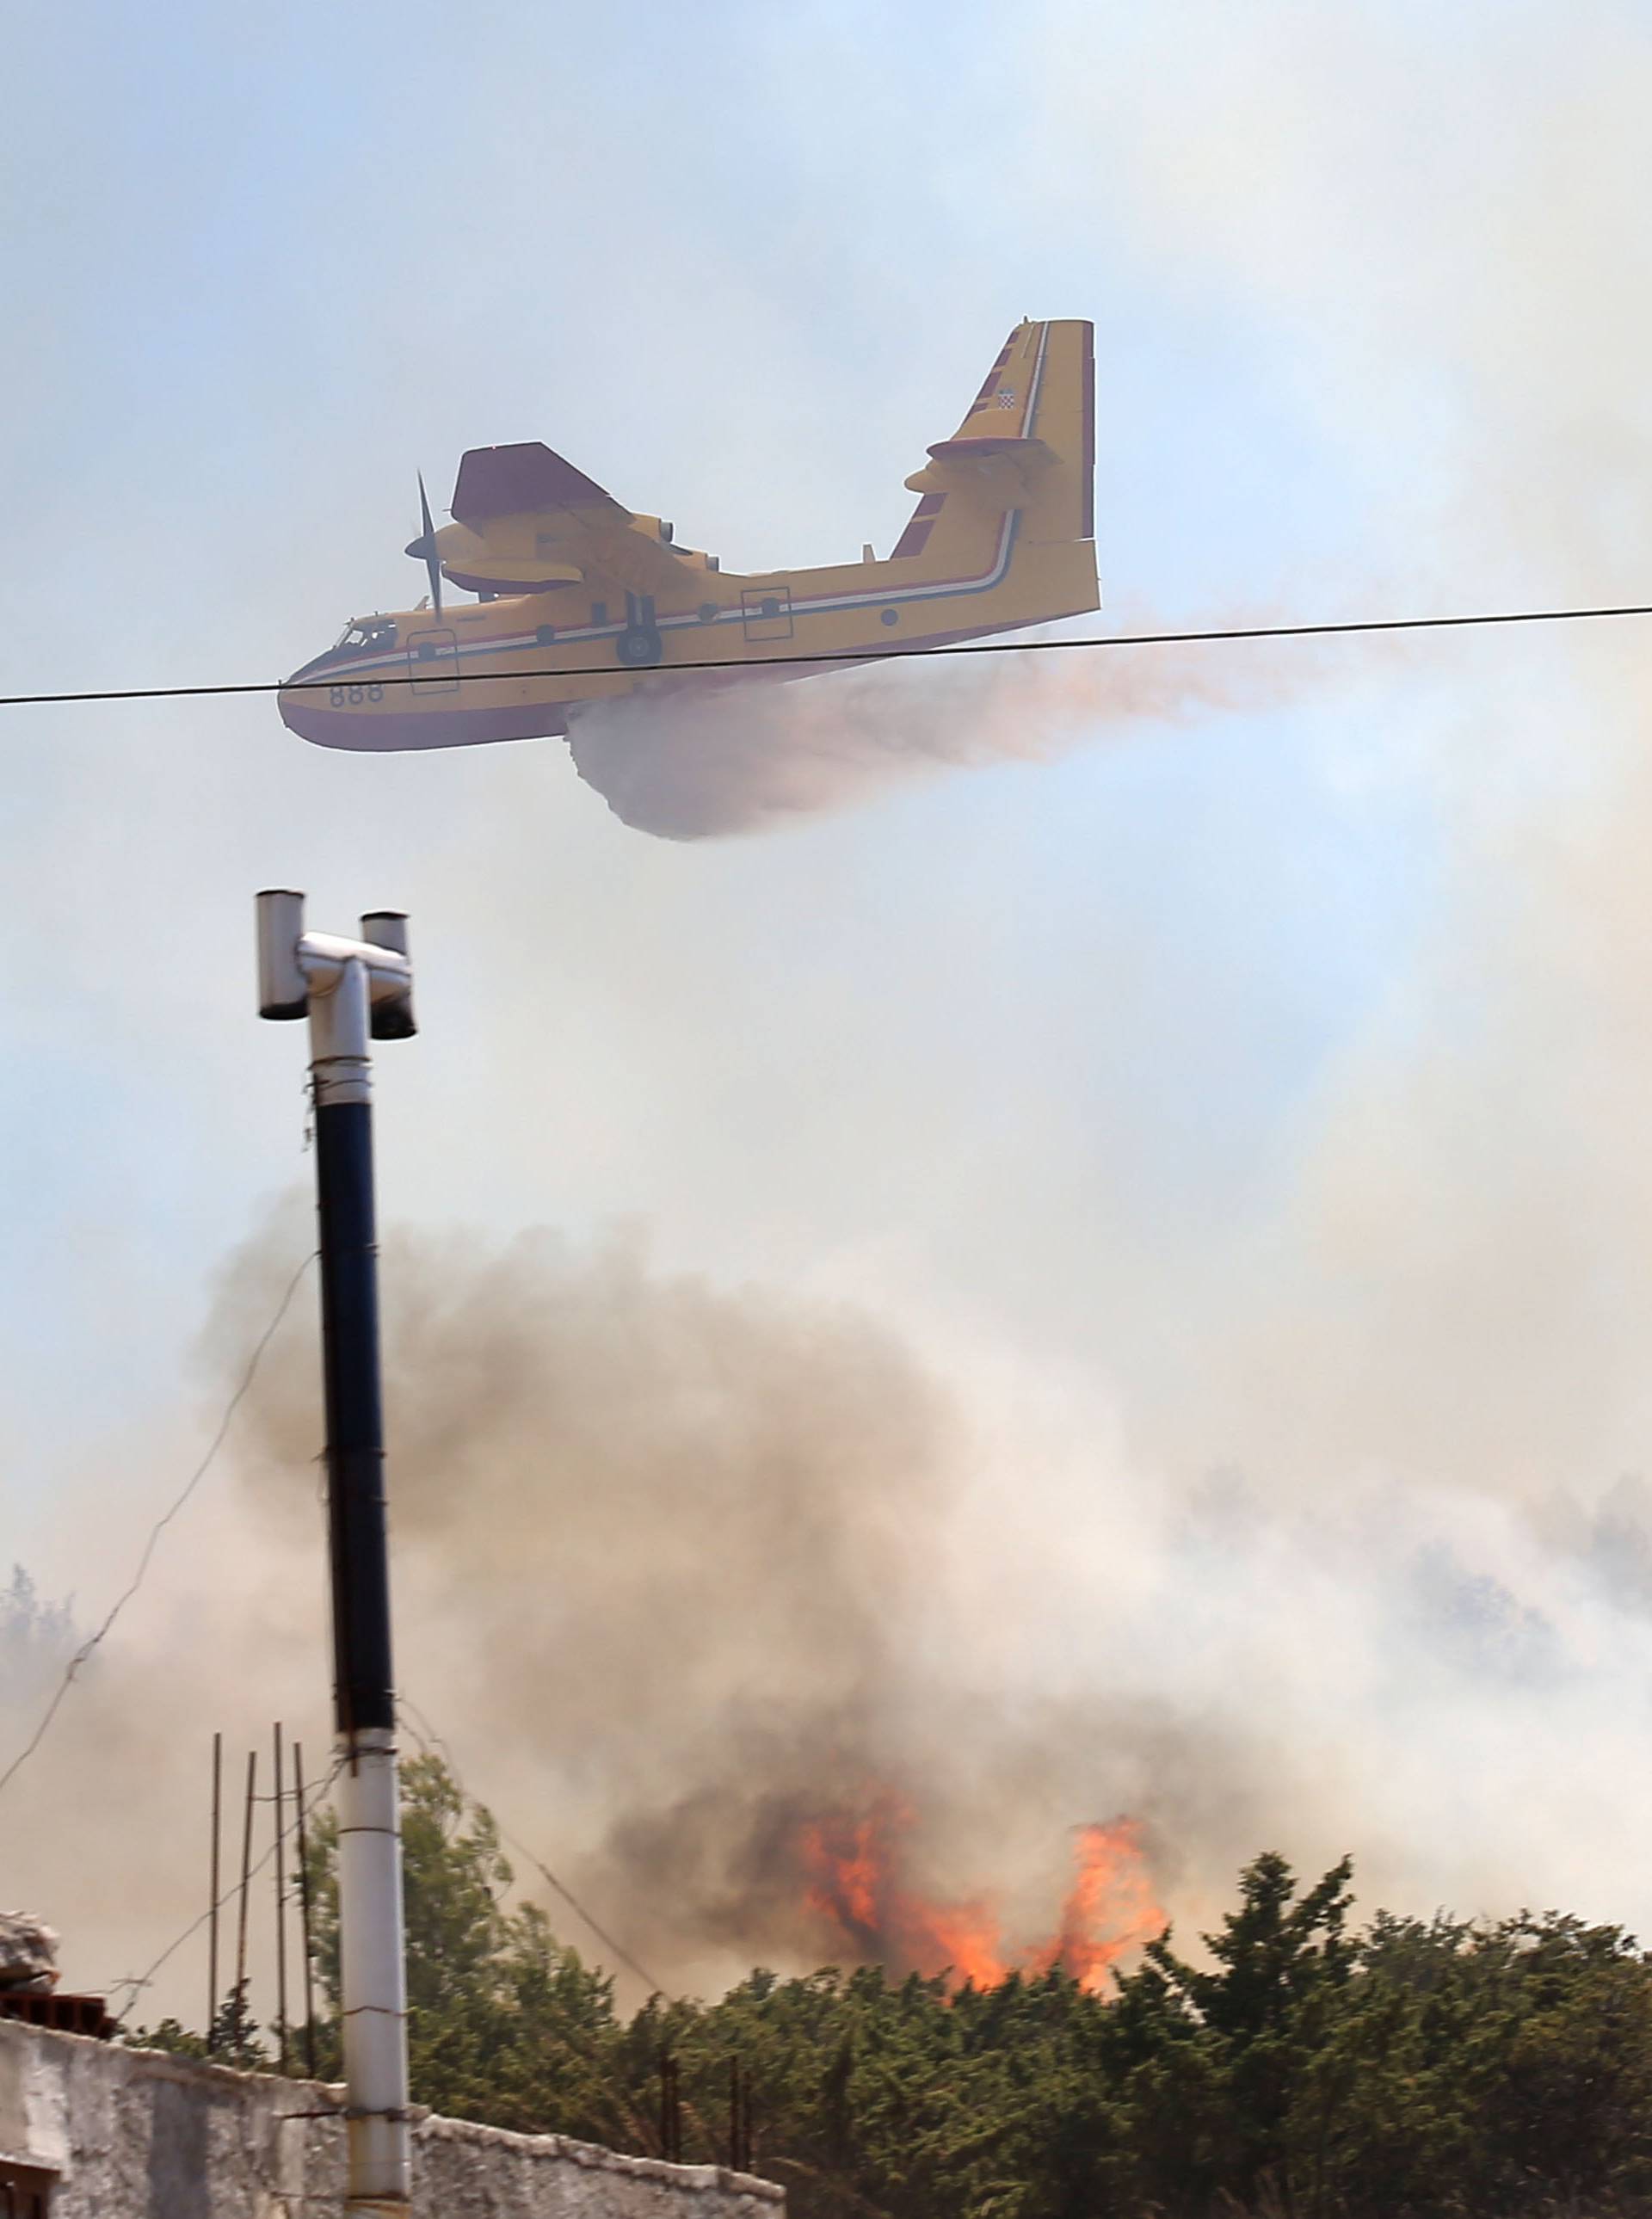 Veliki požar kod Pakoštana, vatra kod Šibenika lokalizirana